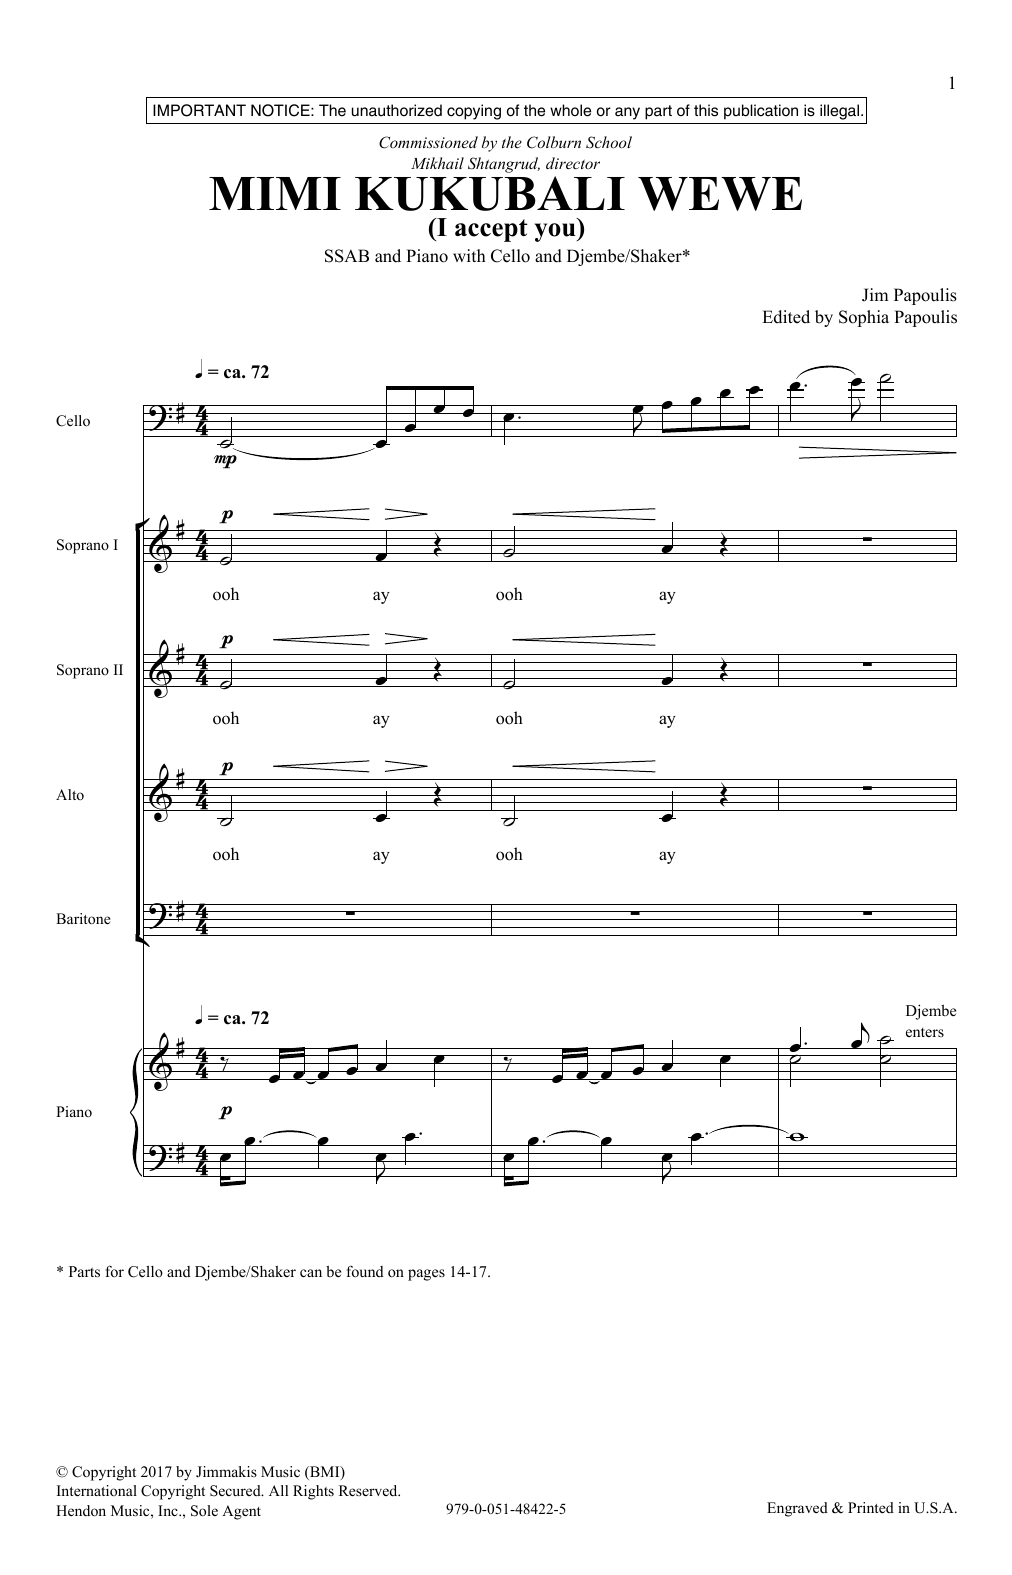 Jim Papoulis Mimi Kukubali Wewe Sheet Music Notes & Chords for SATB - Download or Print PDF